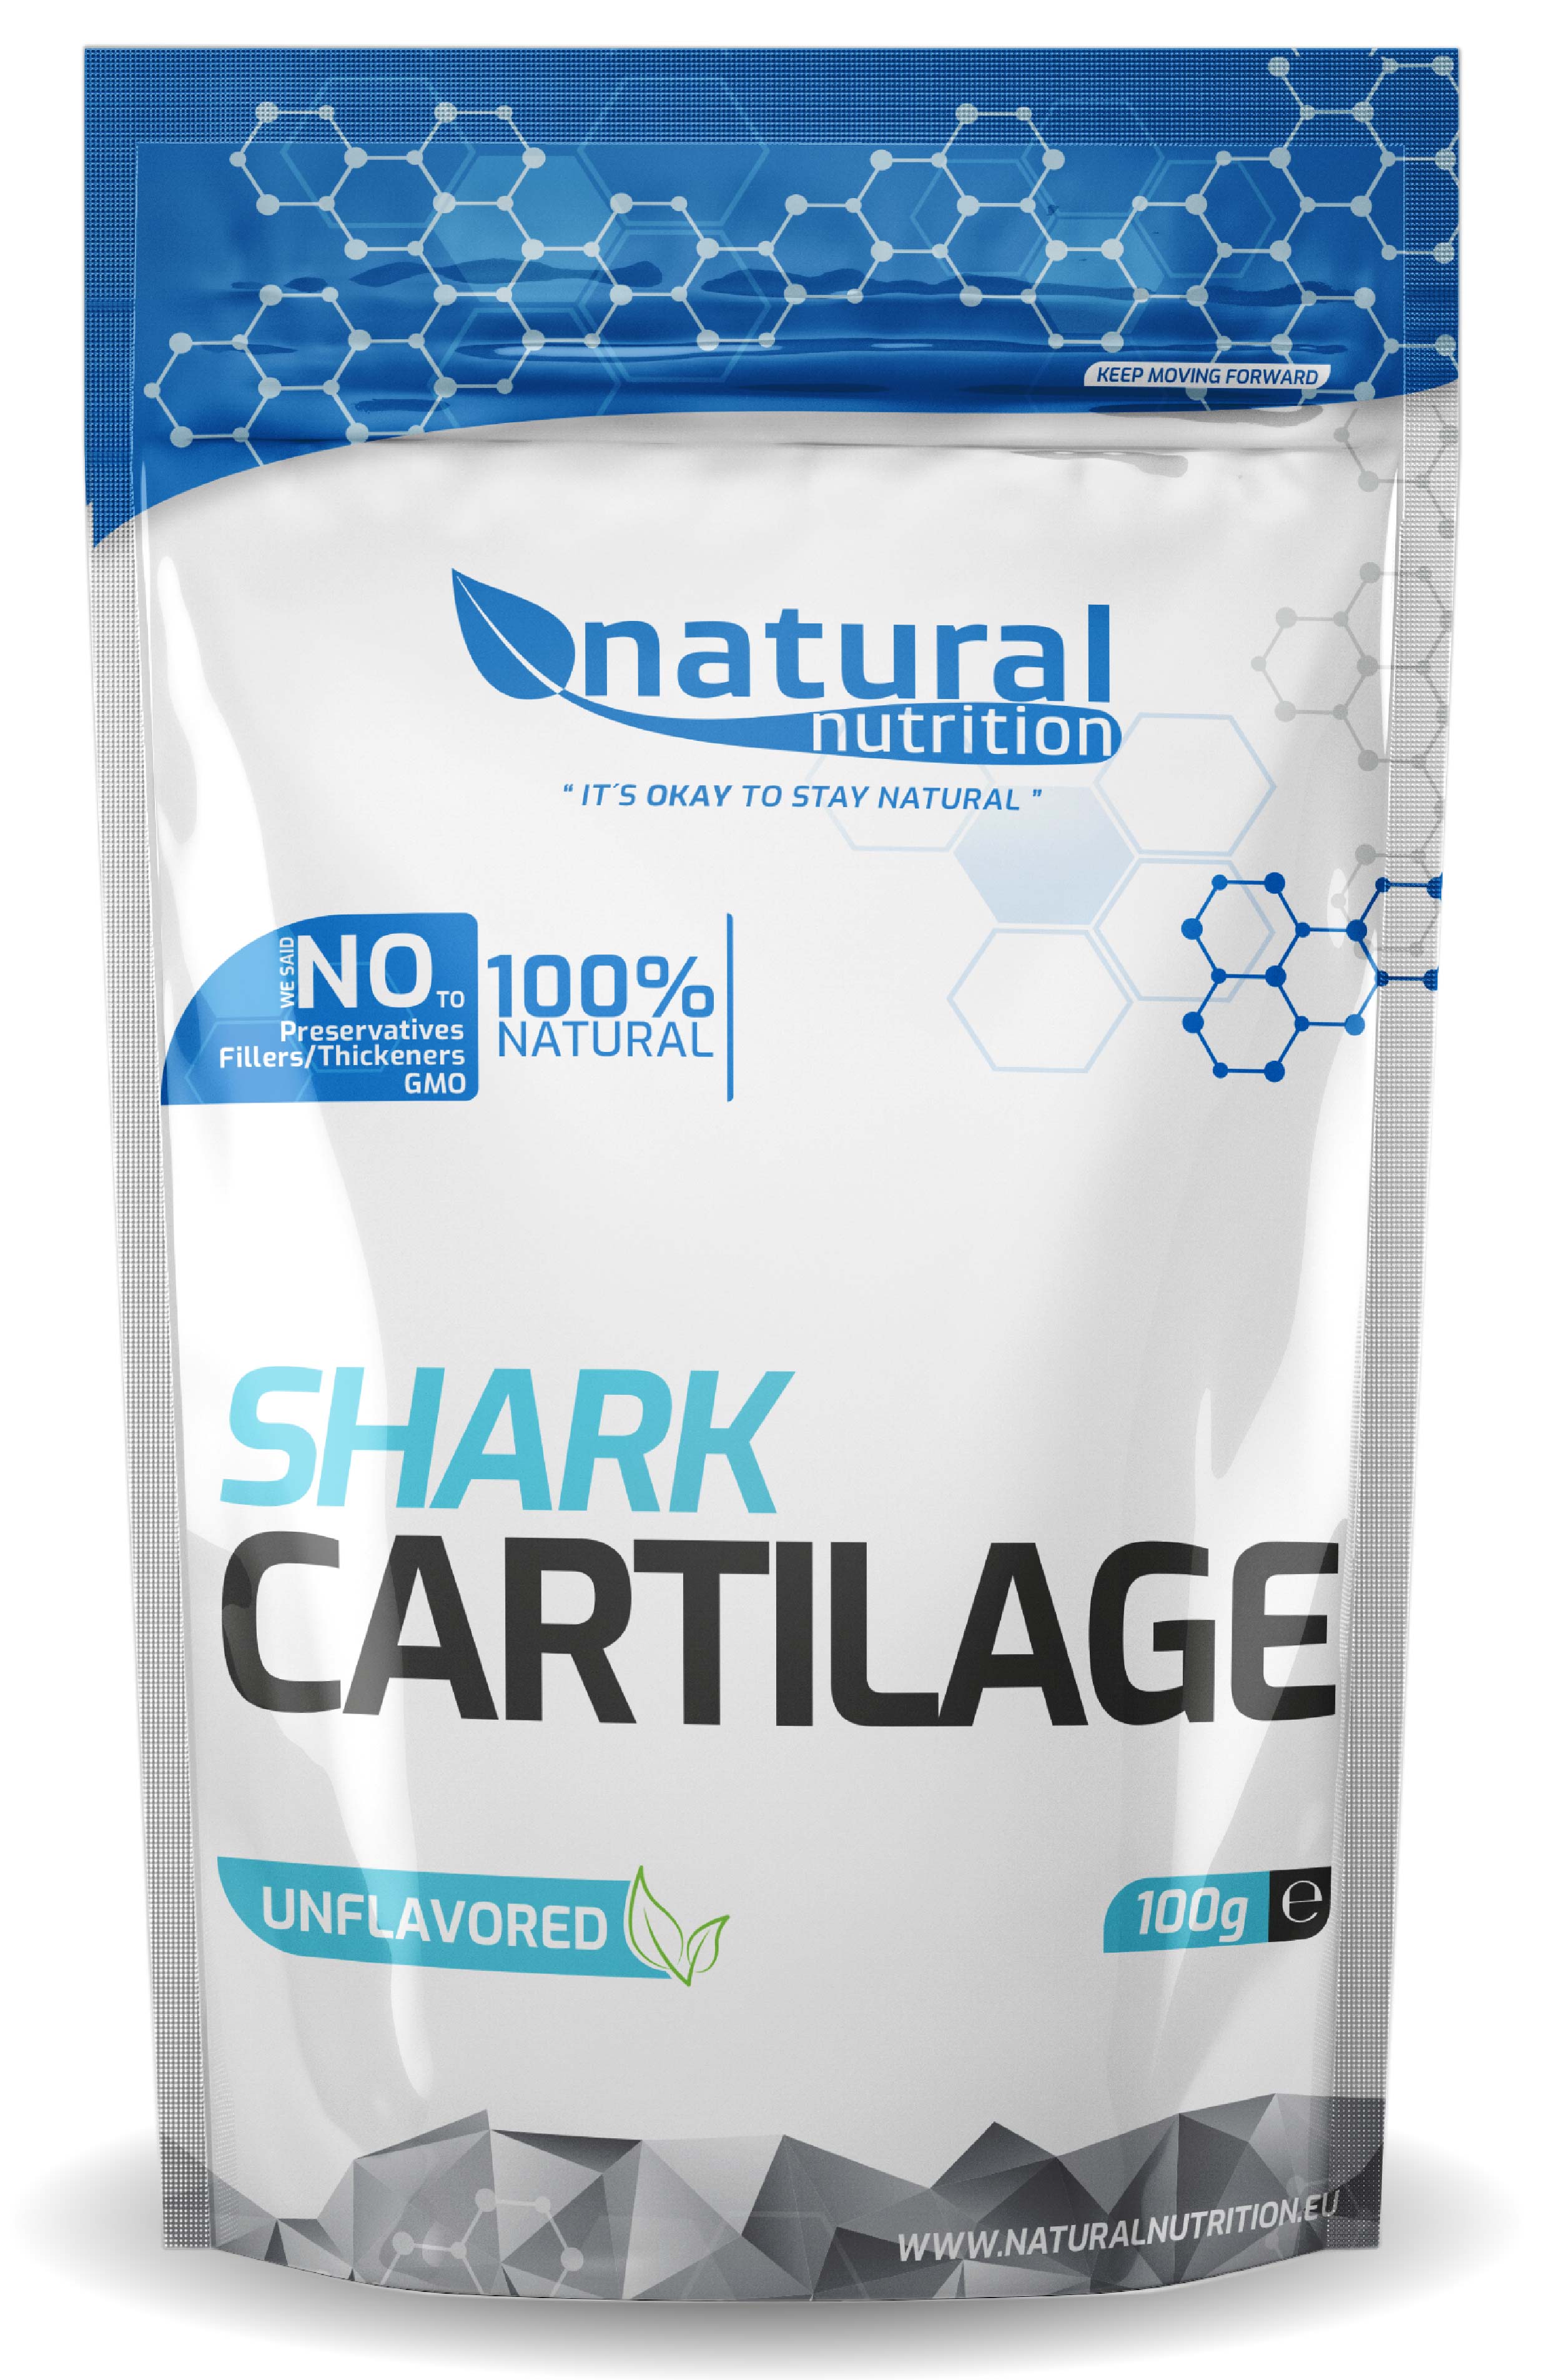 Shark cartilage | NaMaximum